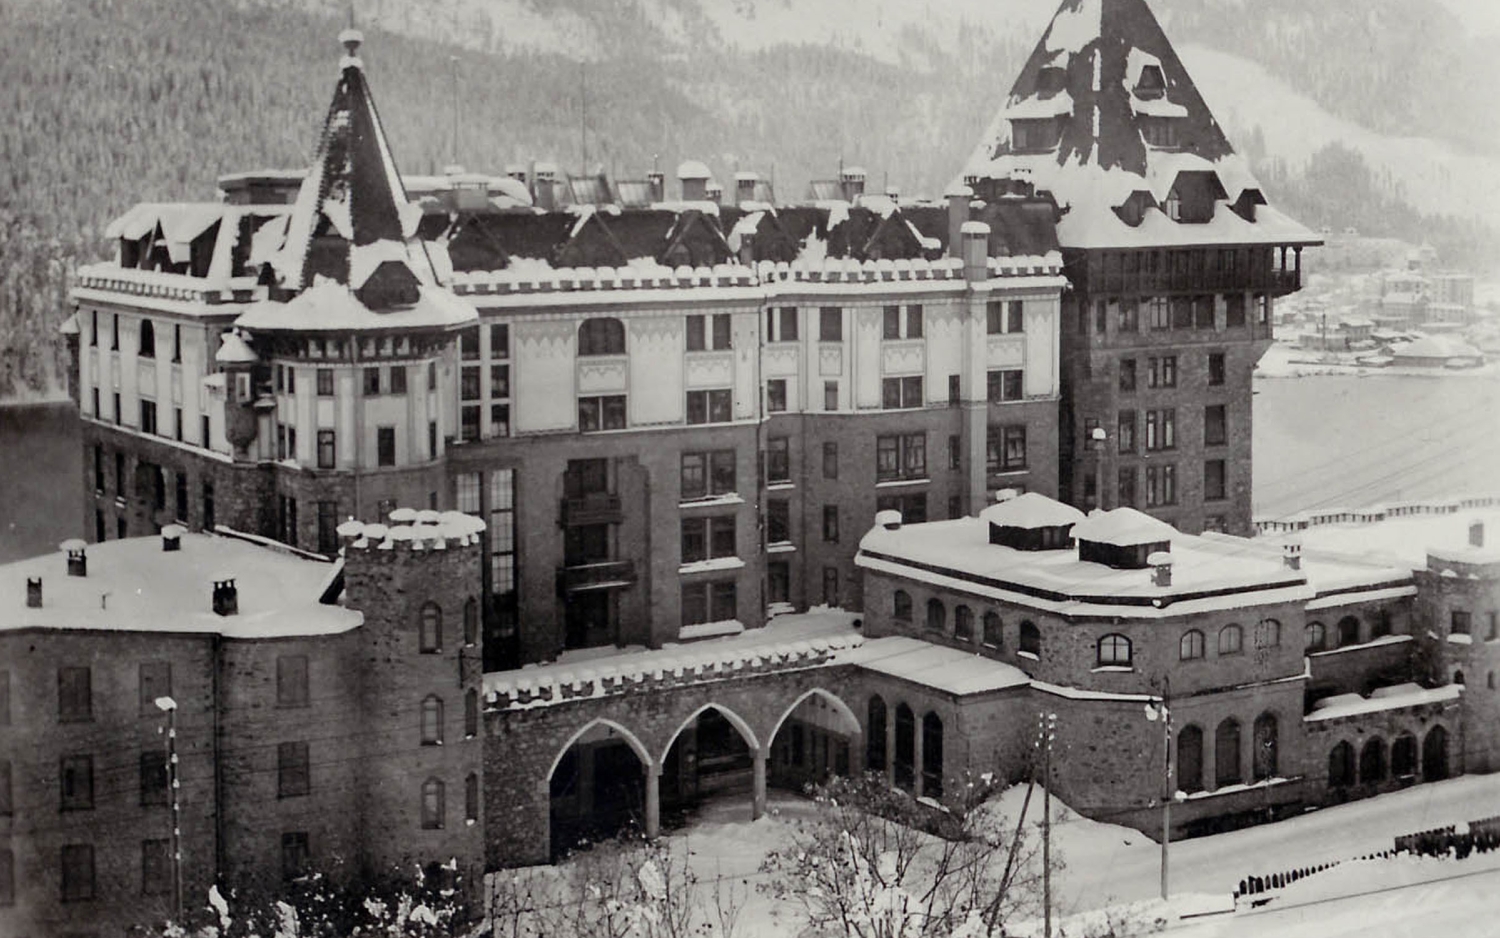 Geschichte badrutts palace st moritz swiss historic hotels 01